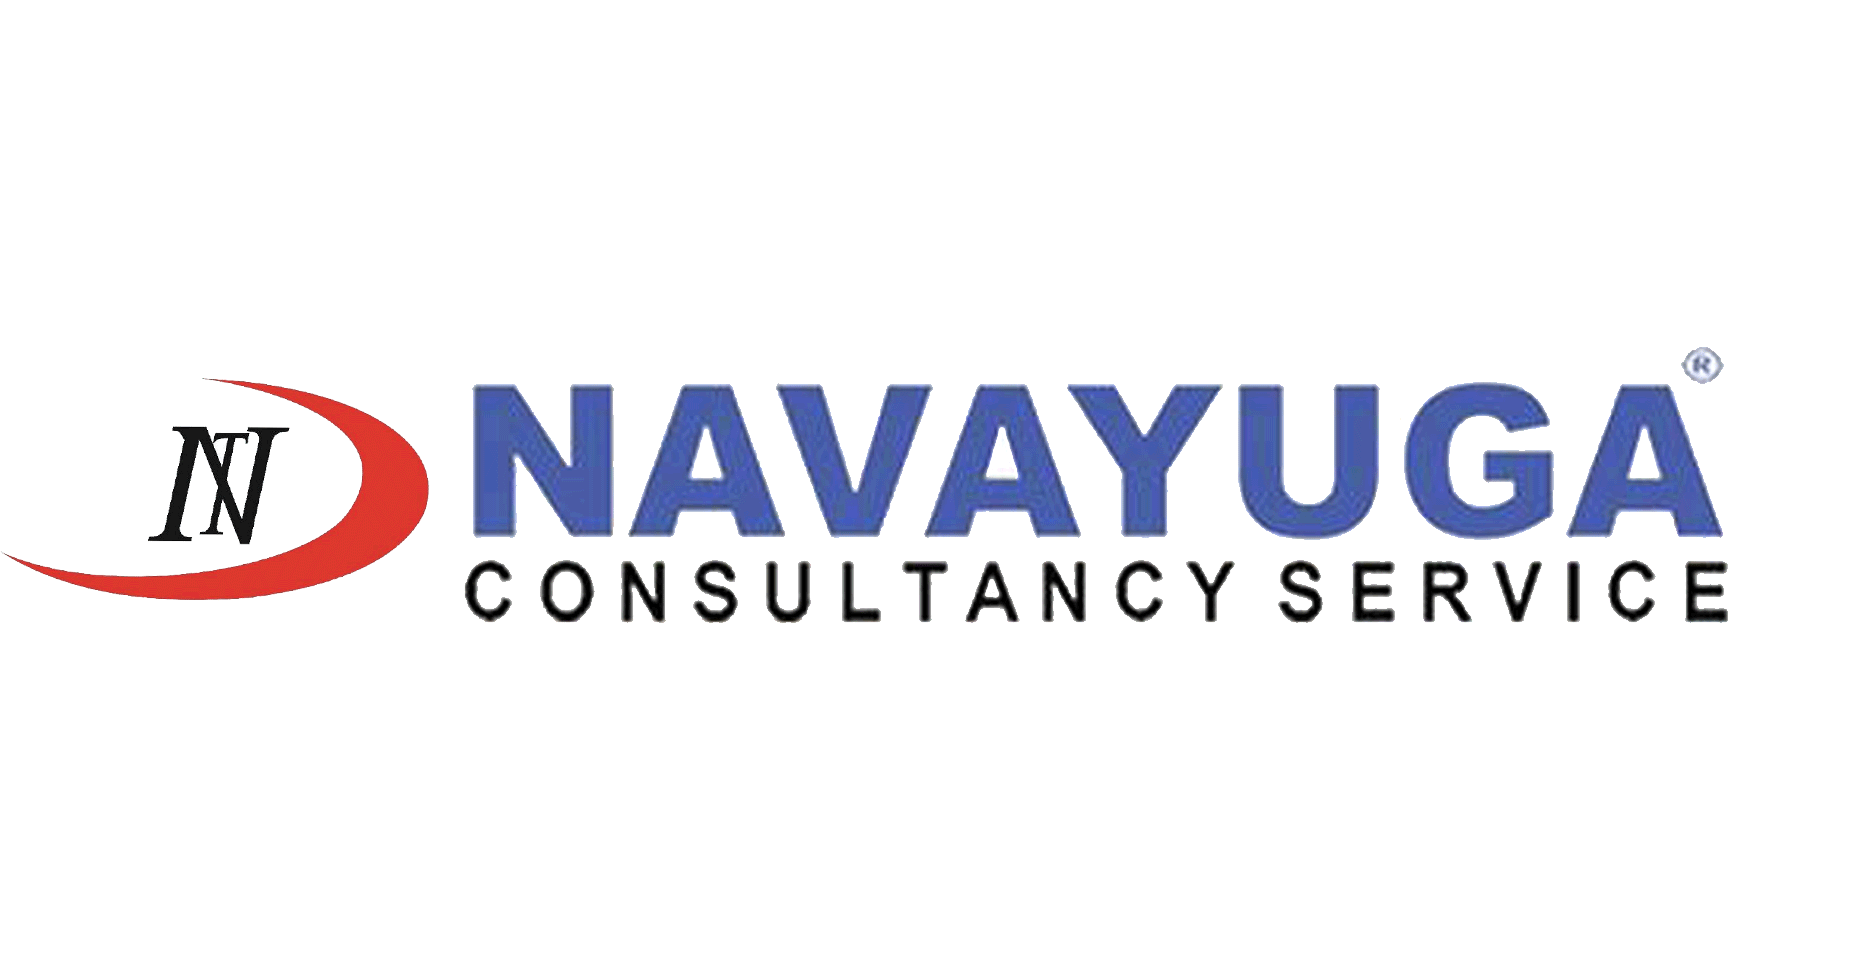 Navayuga Consulatancy Service